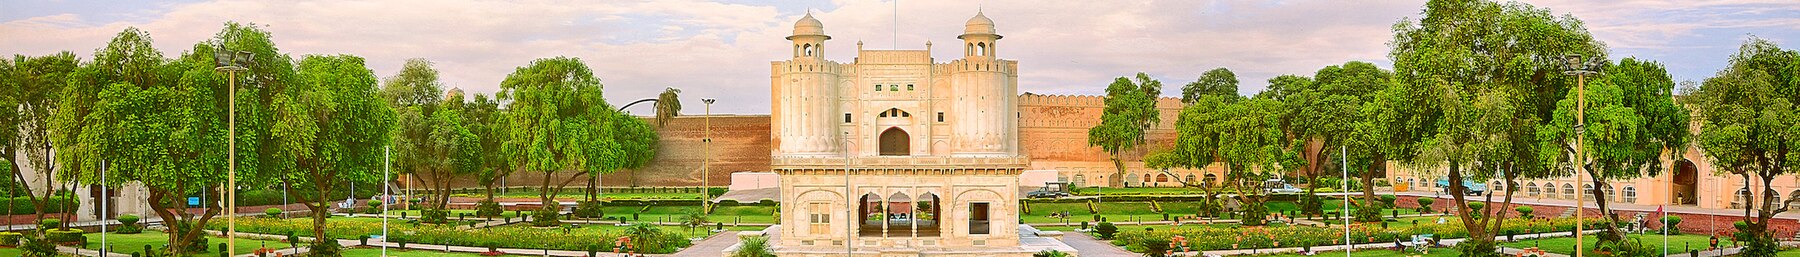 Lahore Fort Panorama WV banner.jpg